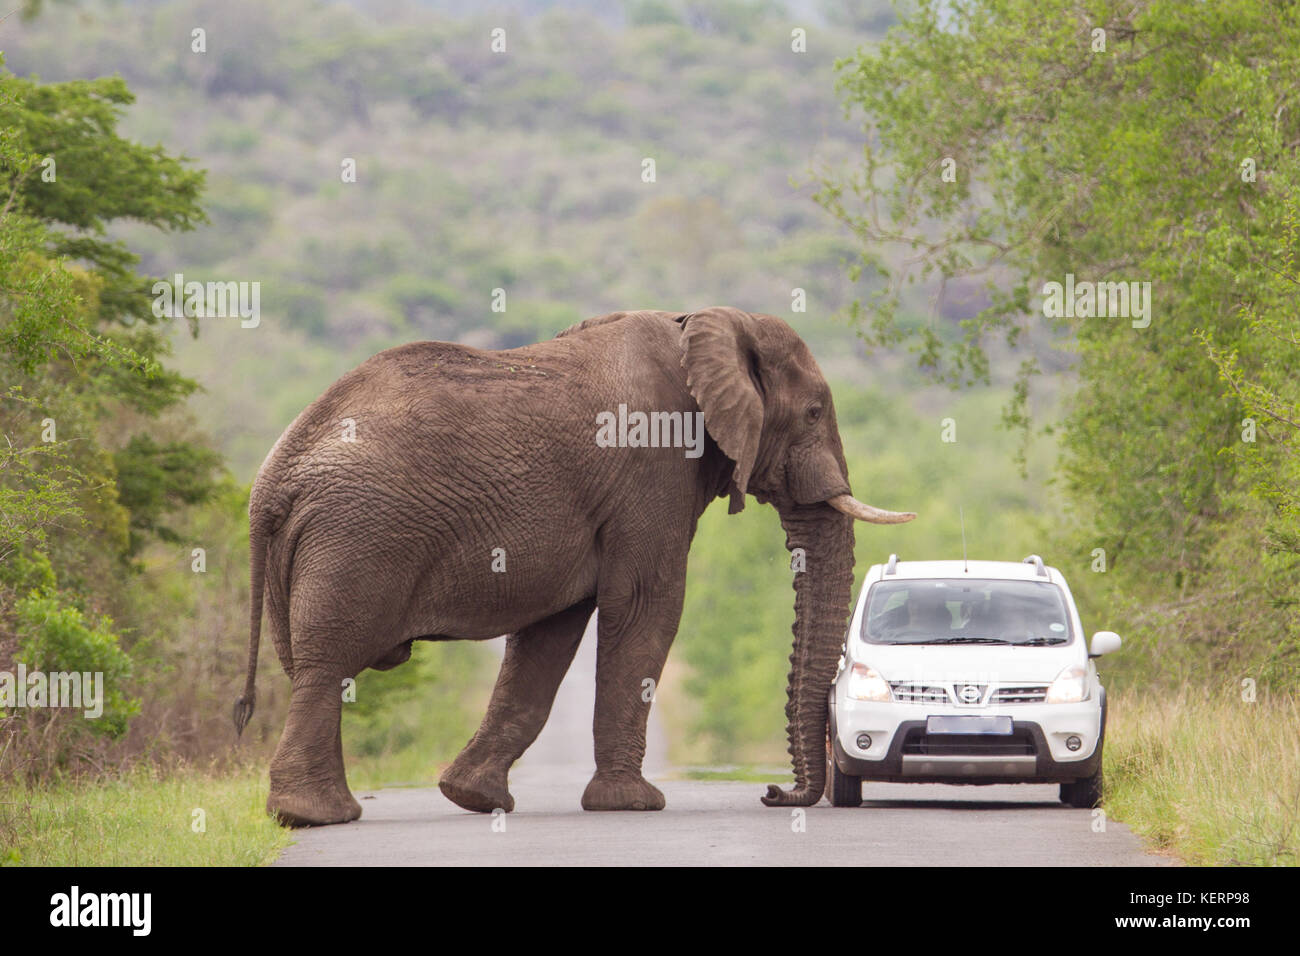 Eine afrikanische Savanne Elefant zu nahe kommt, für Komfort für Touristen  in einem kleinen Auto, Hluhluwe Game Reserve, Südafrika Stockfotografie -  Alamy